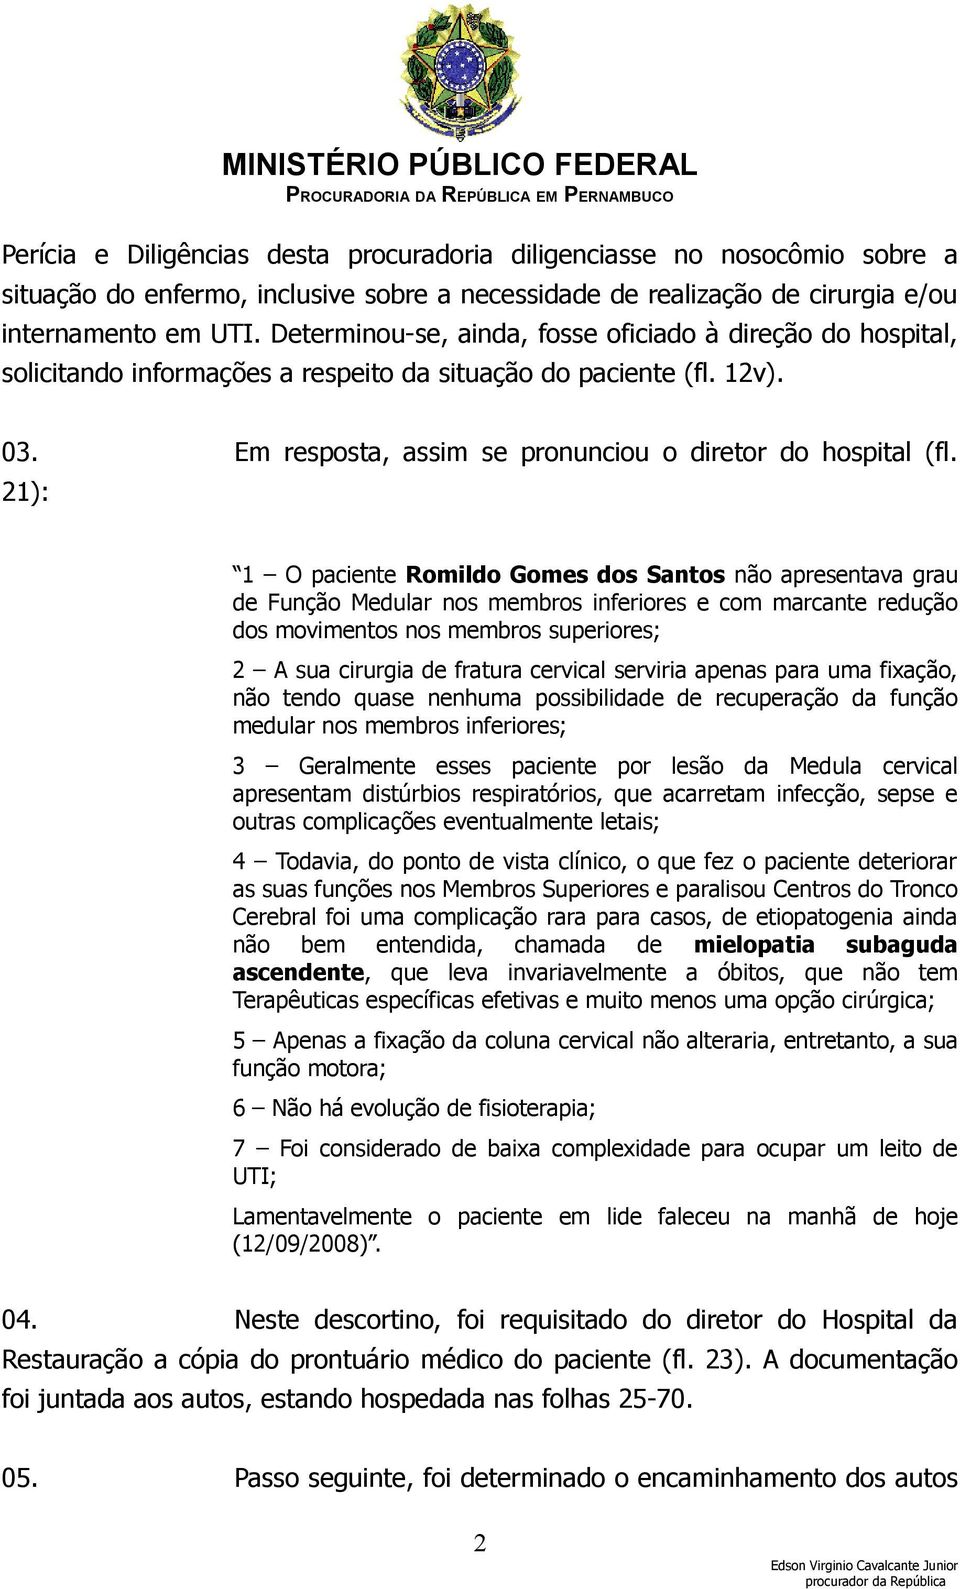 21): 1 O paciente Romildo Gomes dos Santos não apresentava grau de Função Medular nos membros inferiores e com marcante redução dos movimentos nos membros superiores; 2 A sua cirurgia de fratura